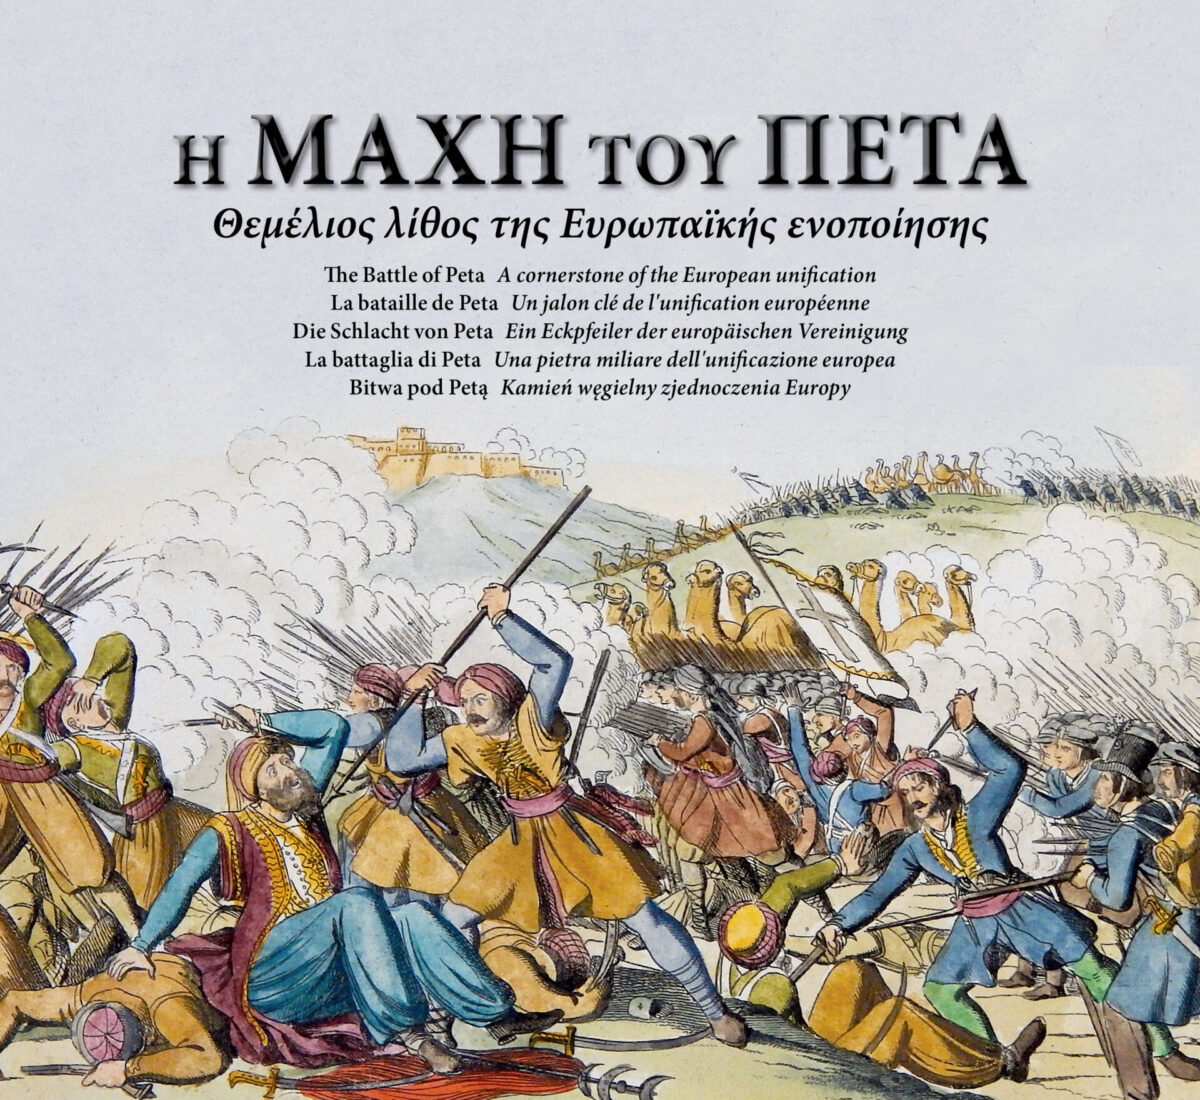 Κωνσταντίνος Βελέντζας, «Η Μάχη του Πέτα. Θεμέλιος λίθος της Ευρωπαϊκής ενοποίησης». Το εξώφυλλο της έκδοσης.